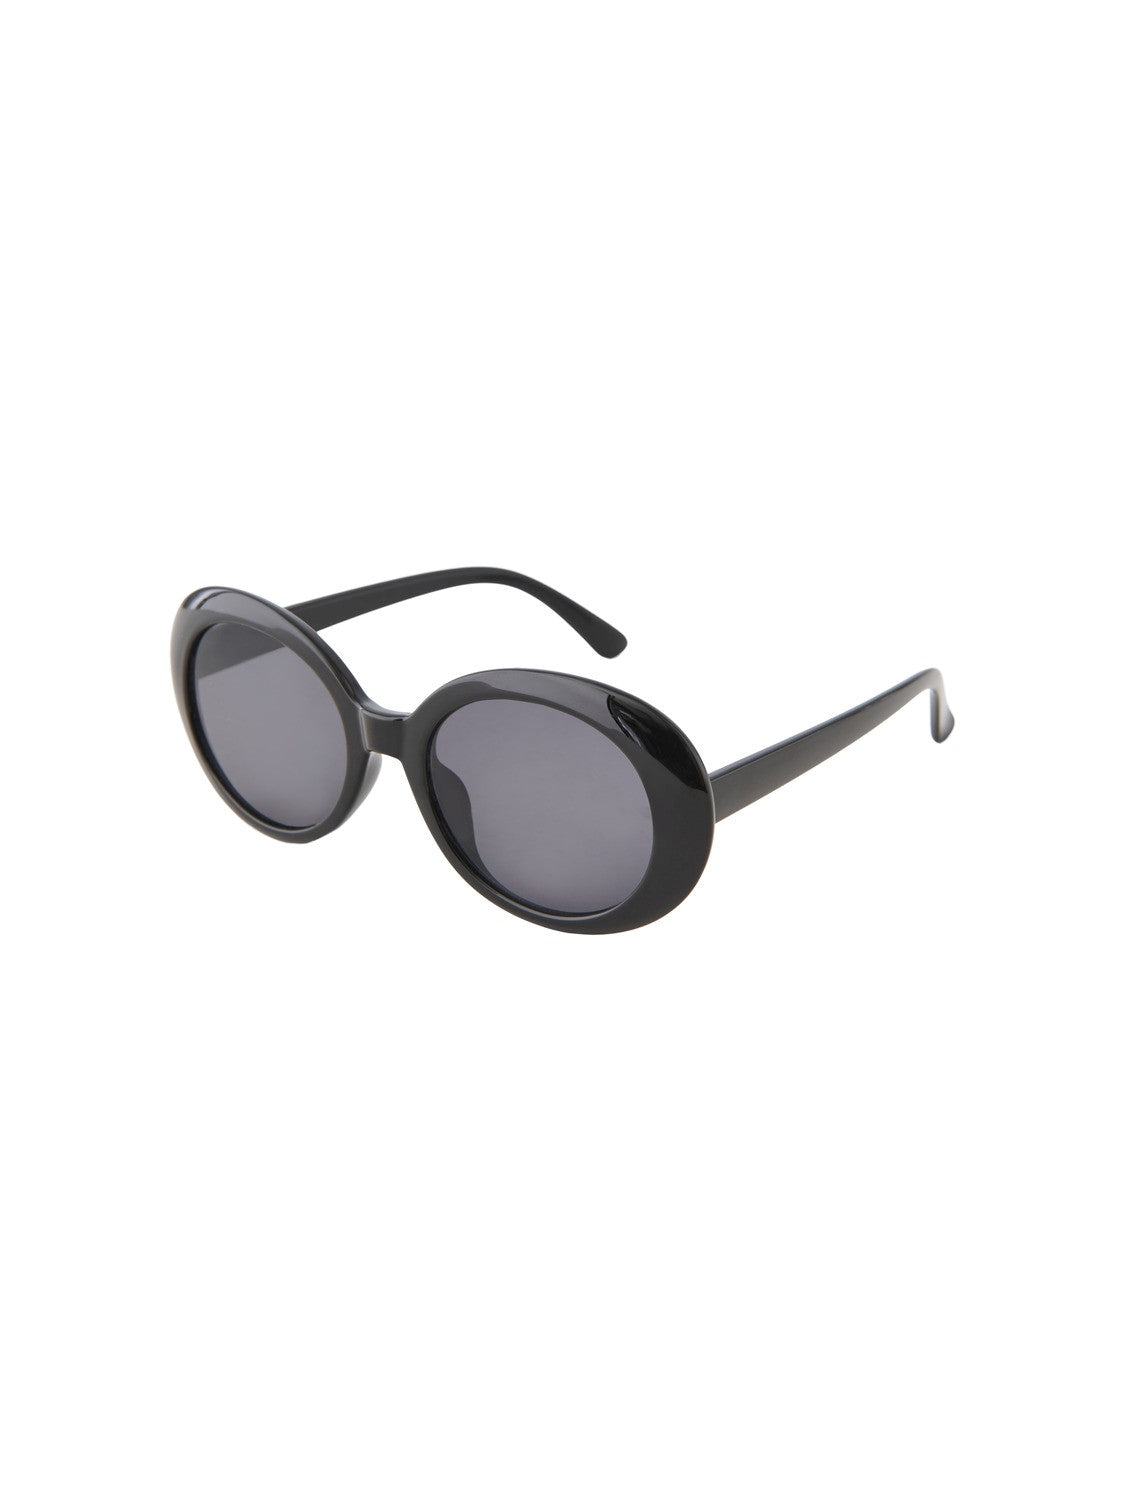 Sandra Round Sunglasses (Black)